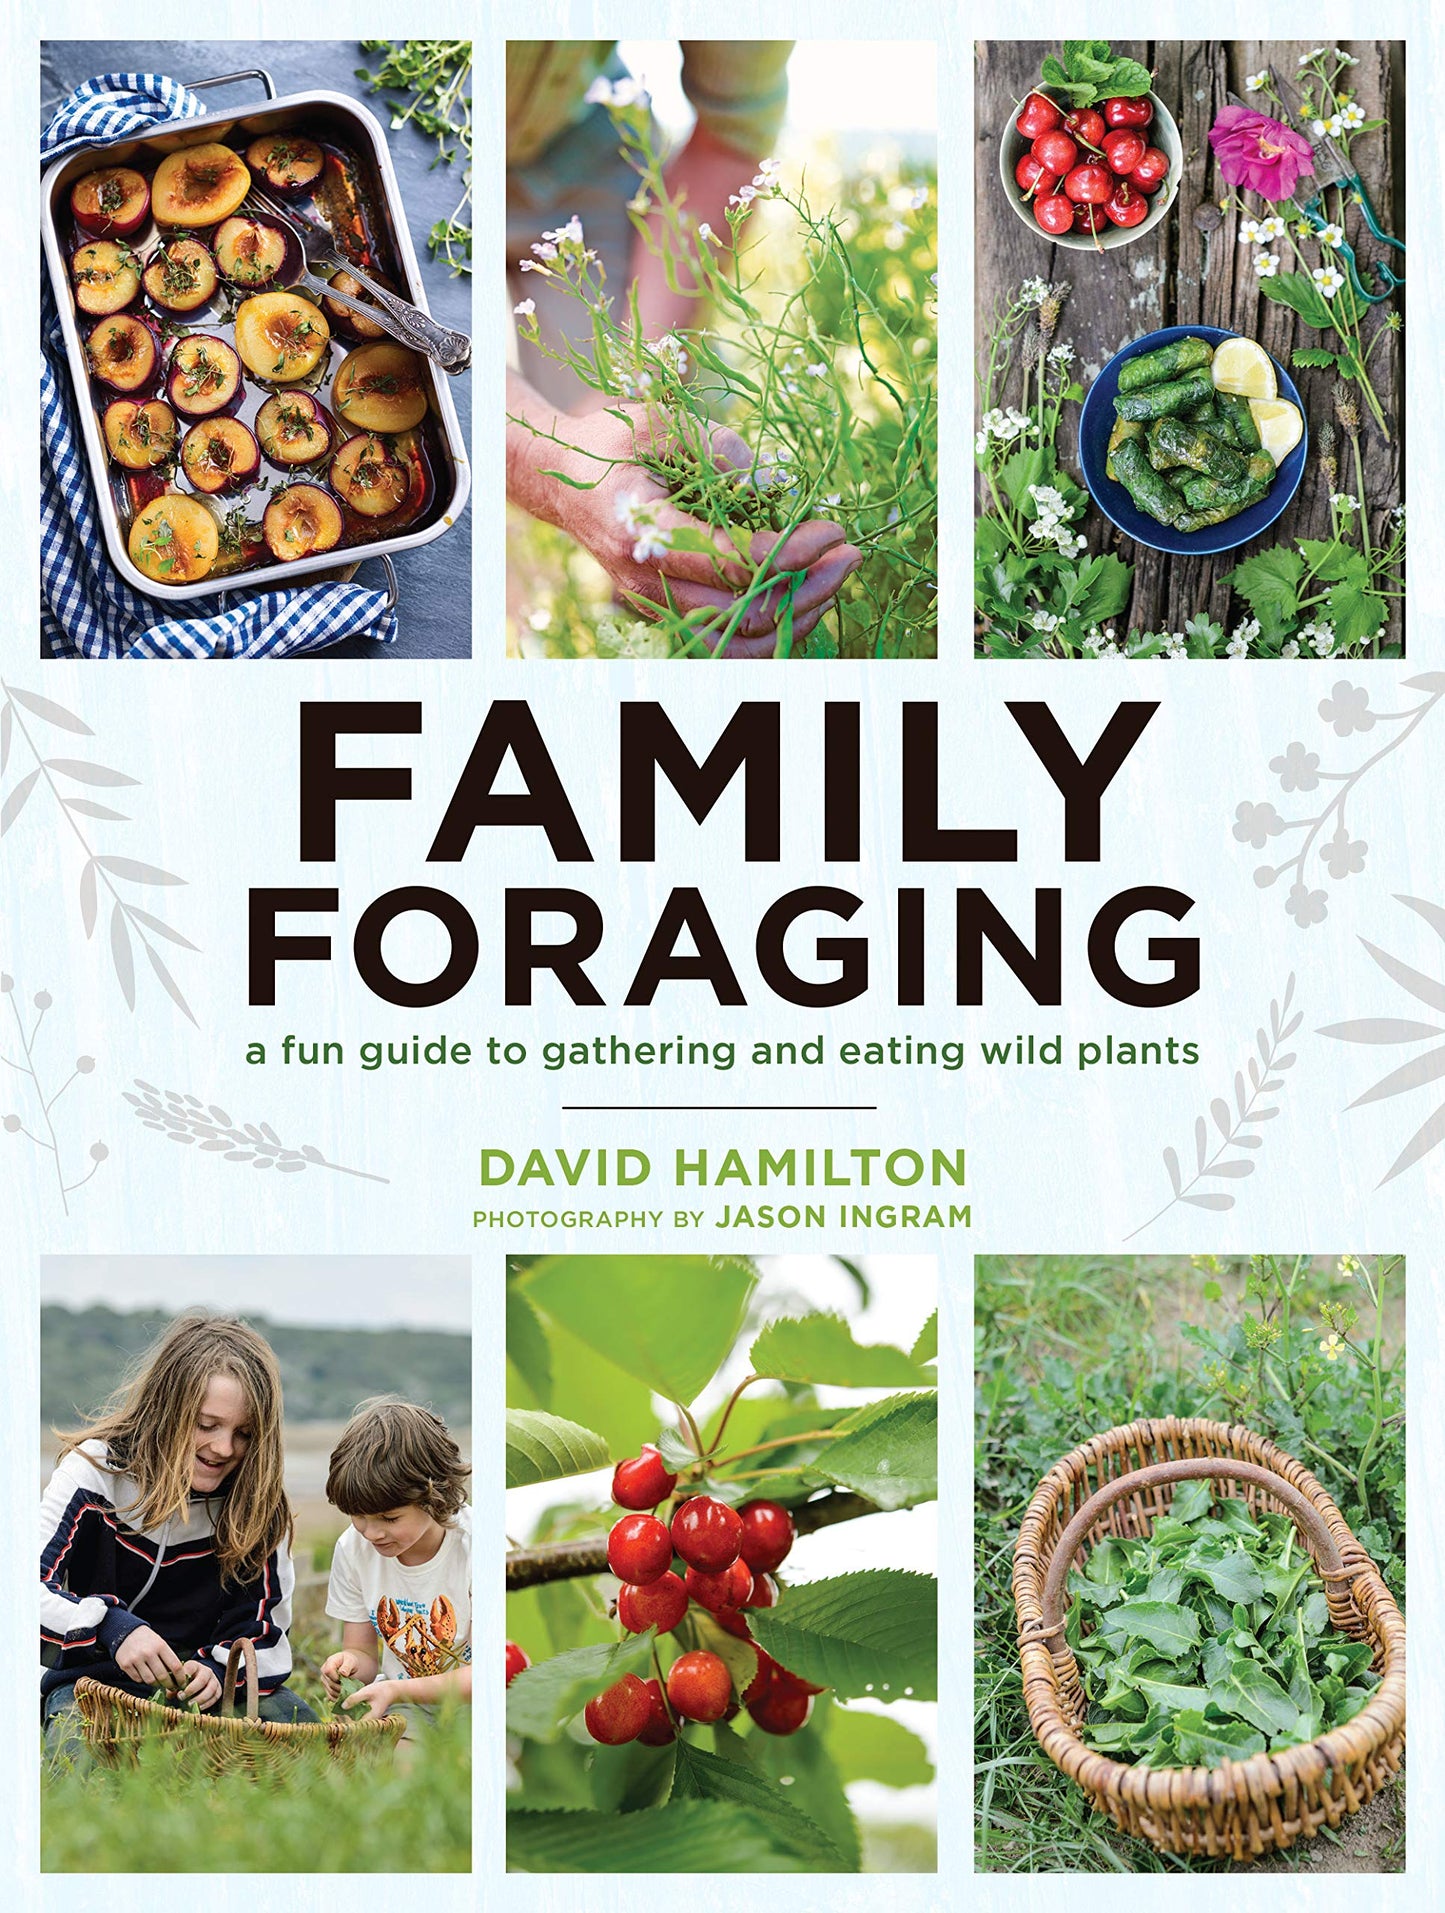 Family Foraging by David Hamilton